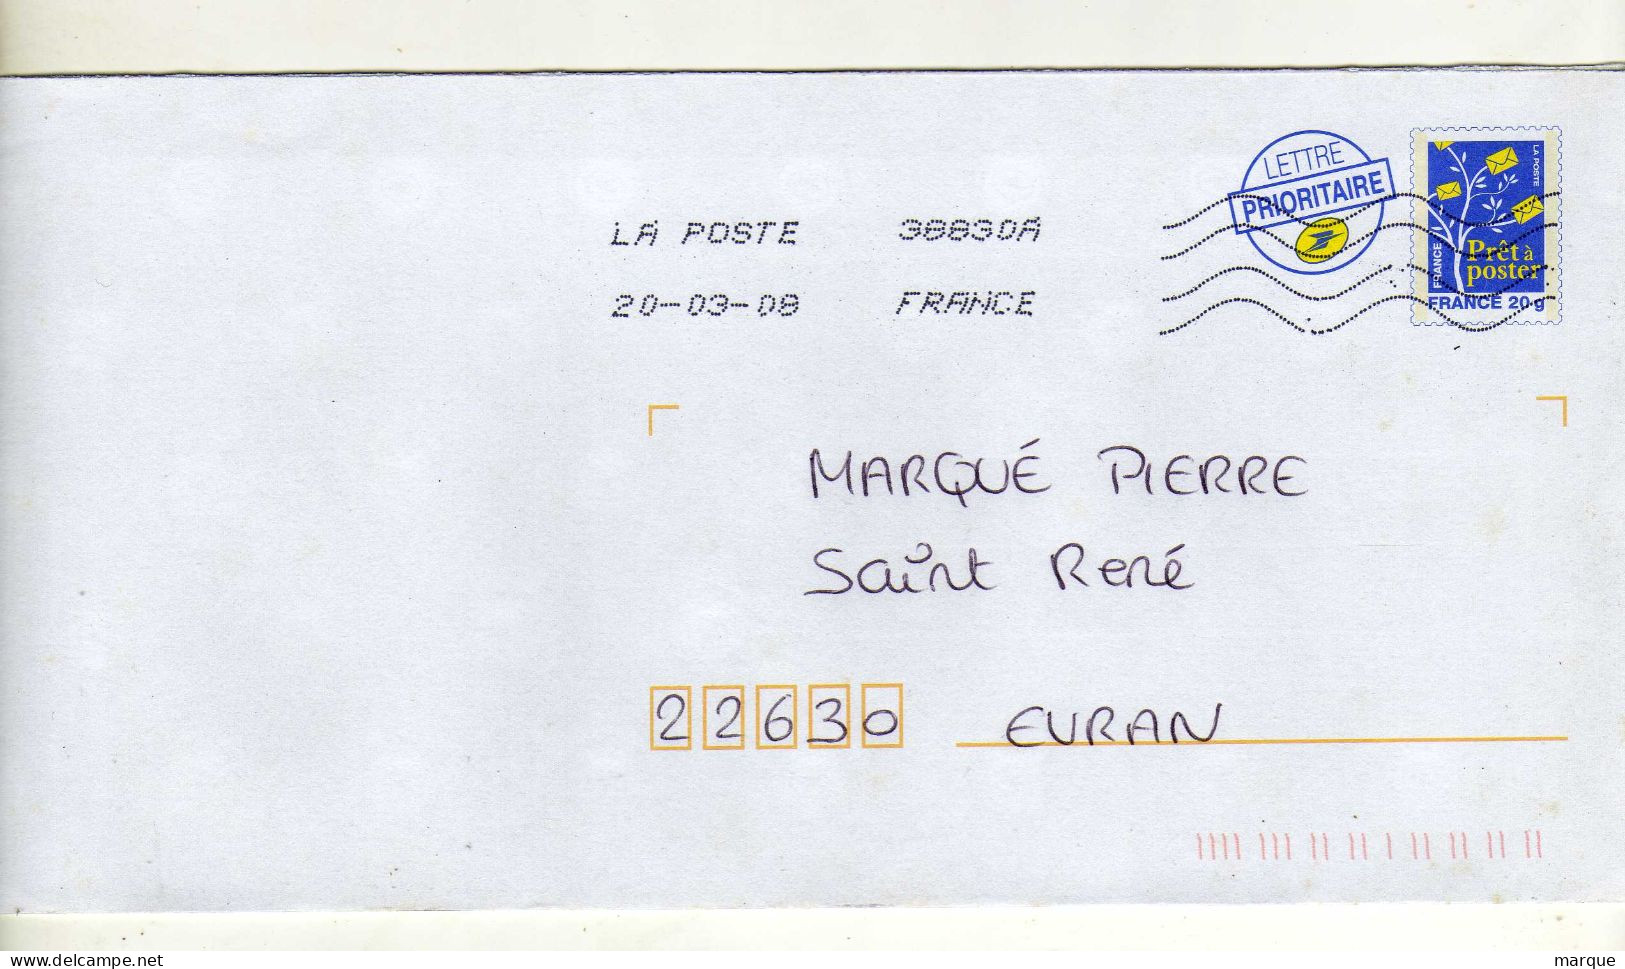 Enveloppe FRANCE Prêt à Poster Lettre Prioritaire 20g Oblitération LA POSTE 38830A 20/03/2008 - PAP: Aufdrucke/Blaues Logo